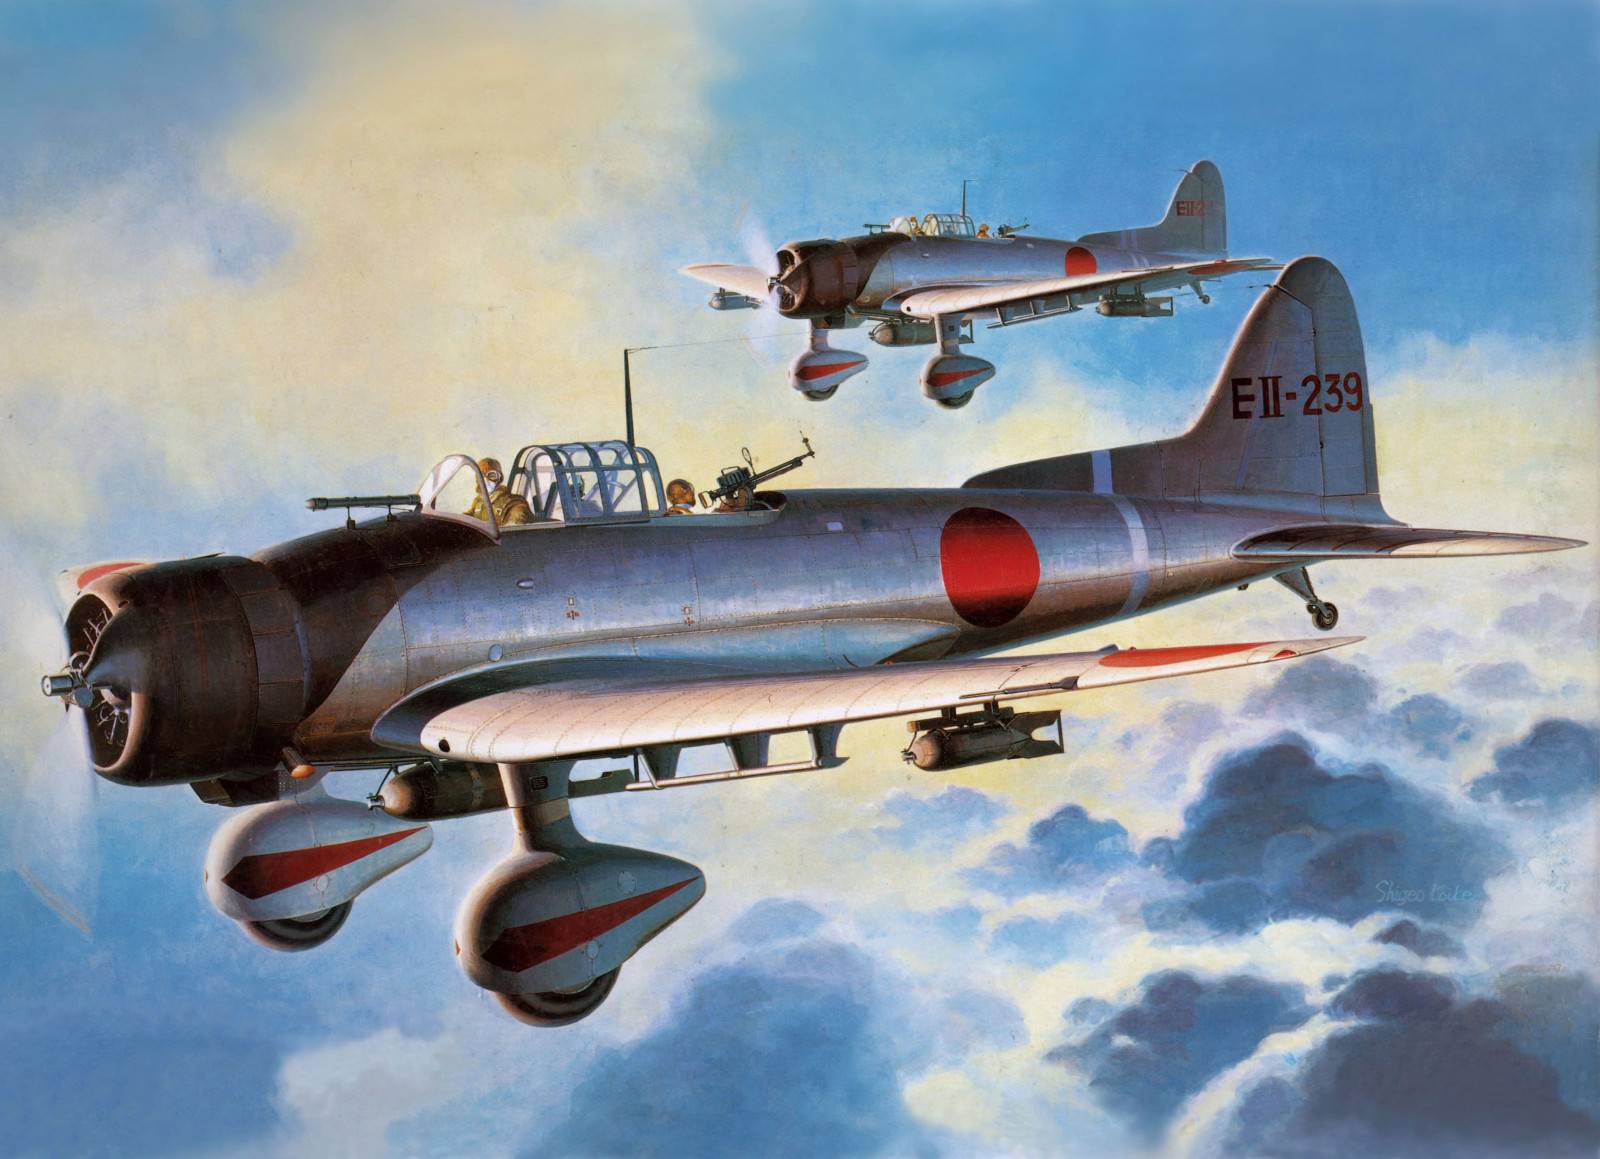 Читать онлайн книгу авиация японии во второй мировой войне. часть третья: накадзима - тачикава - андрей фирсов бесплатно. 4-я страница текста книги.